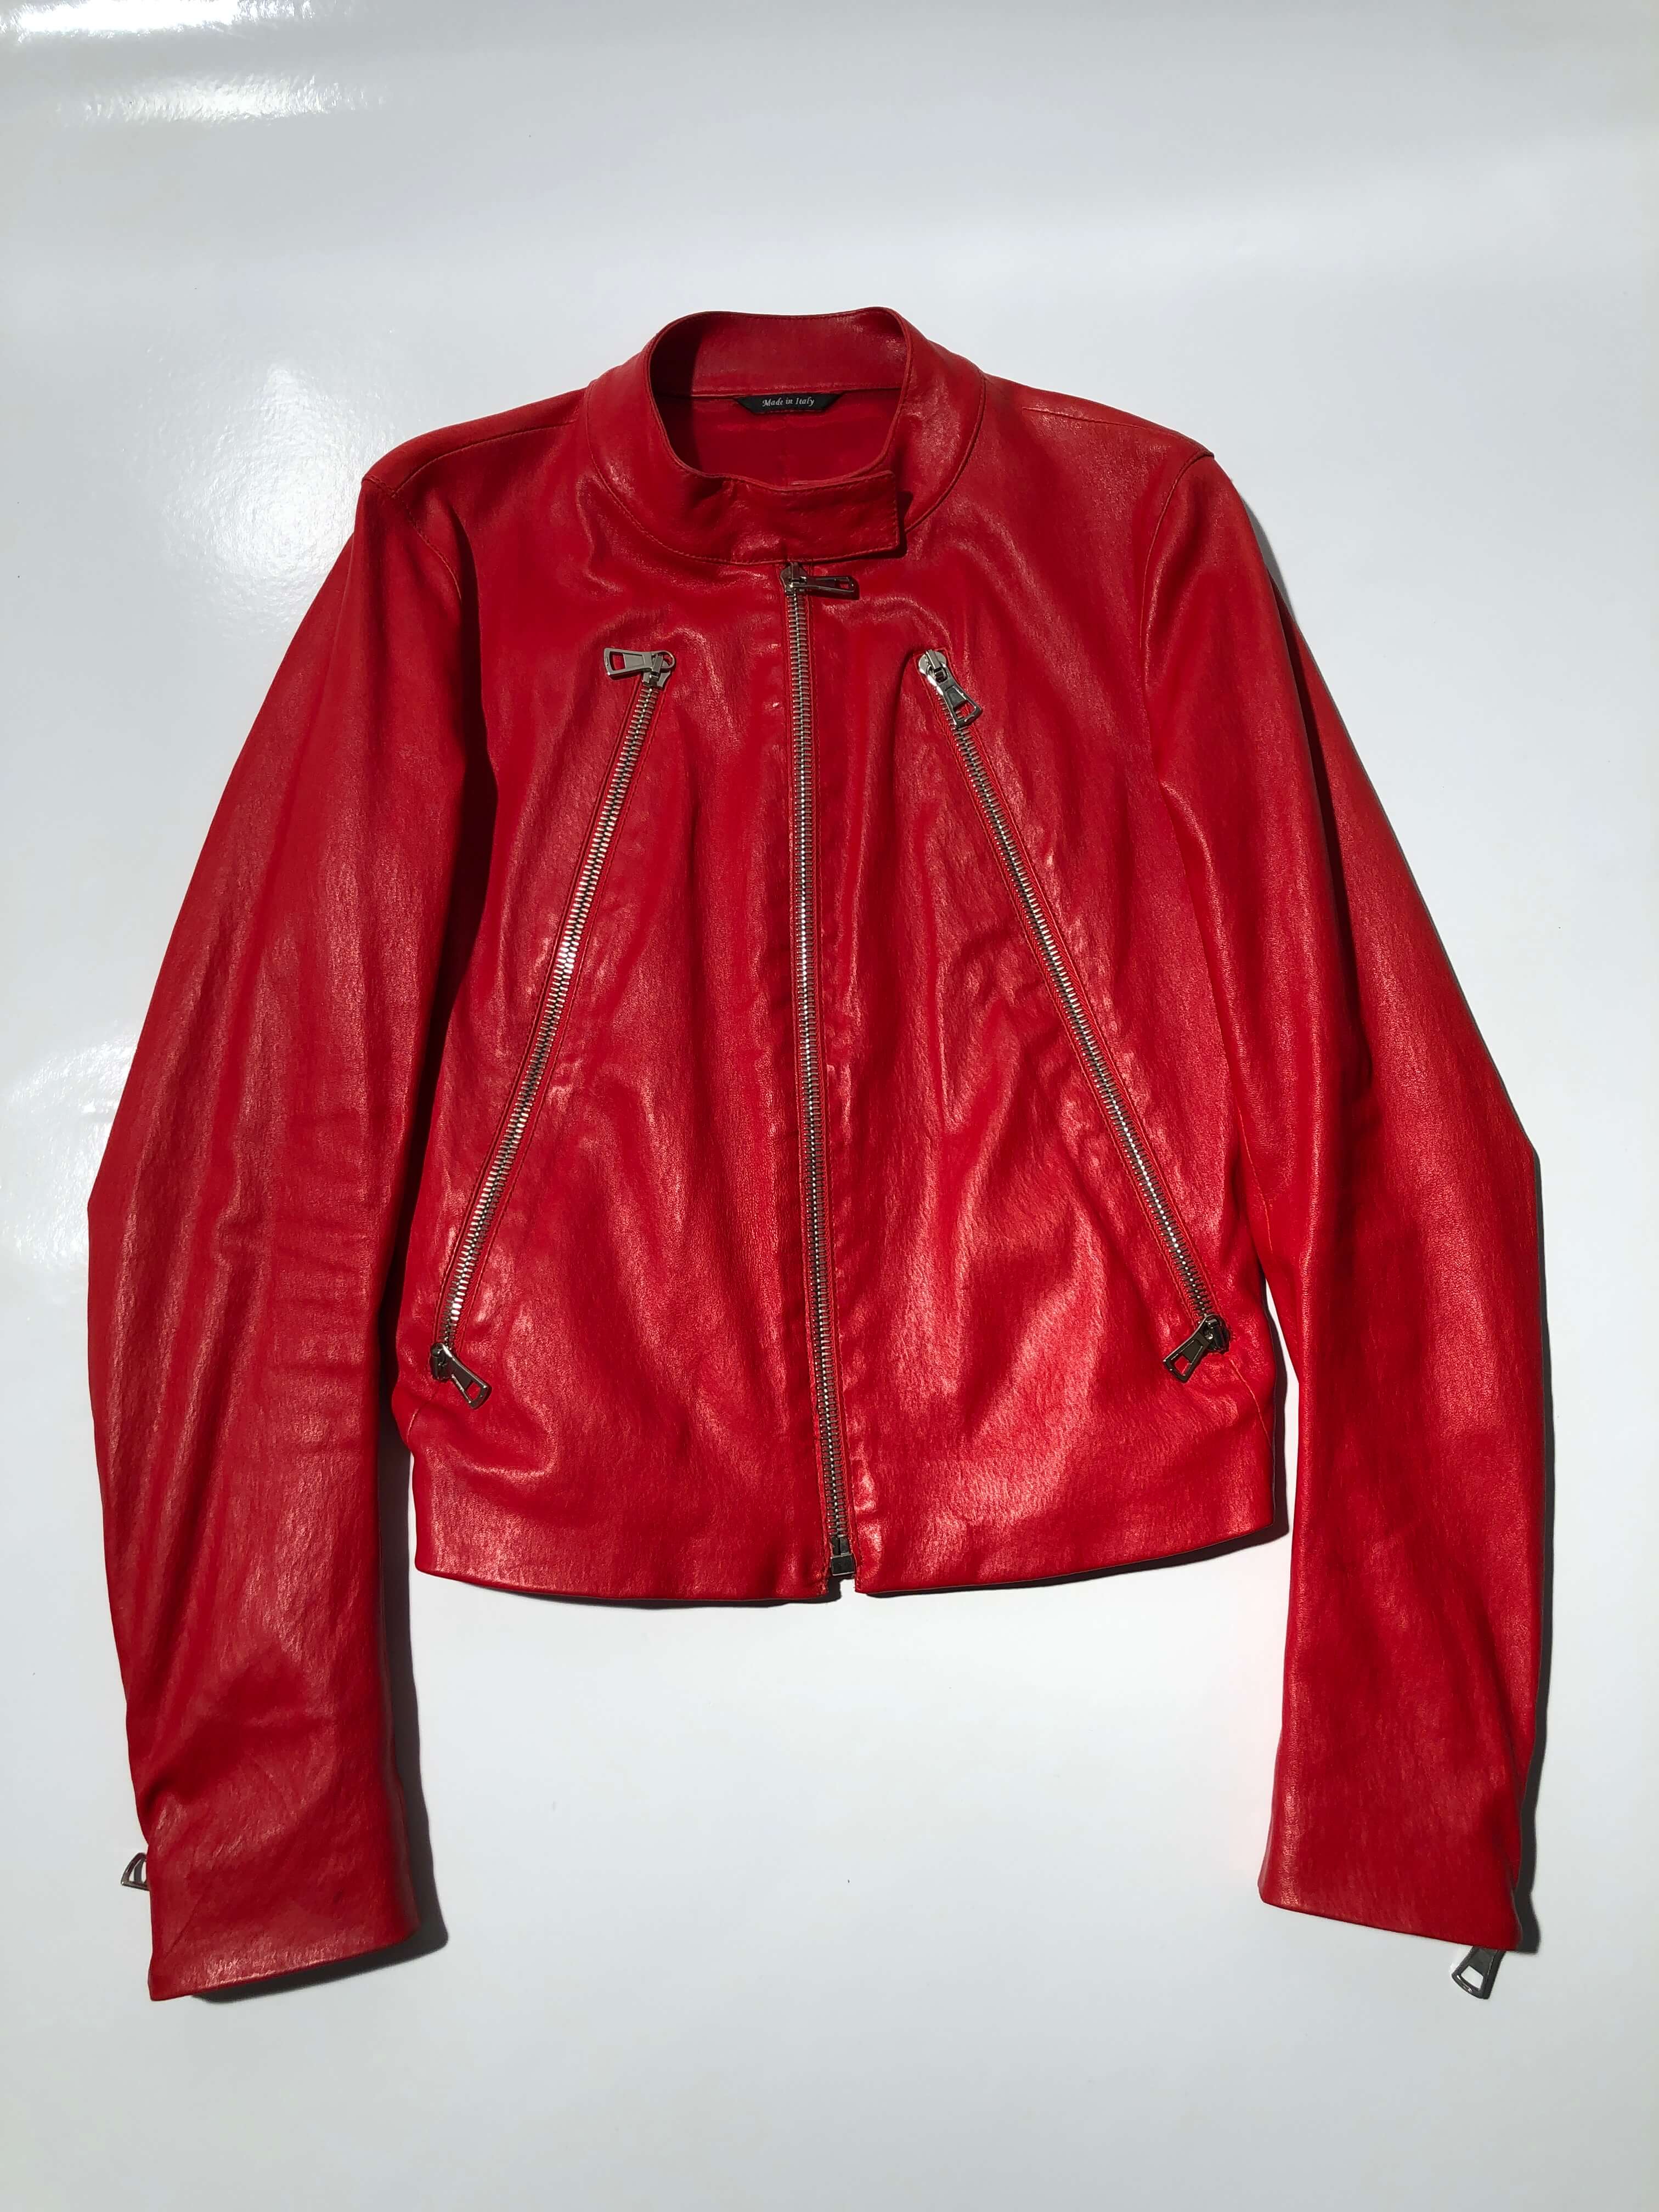 Maison Martin Margiela 5-zip red leather jacket